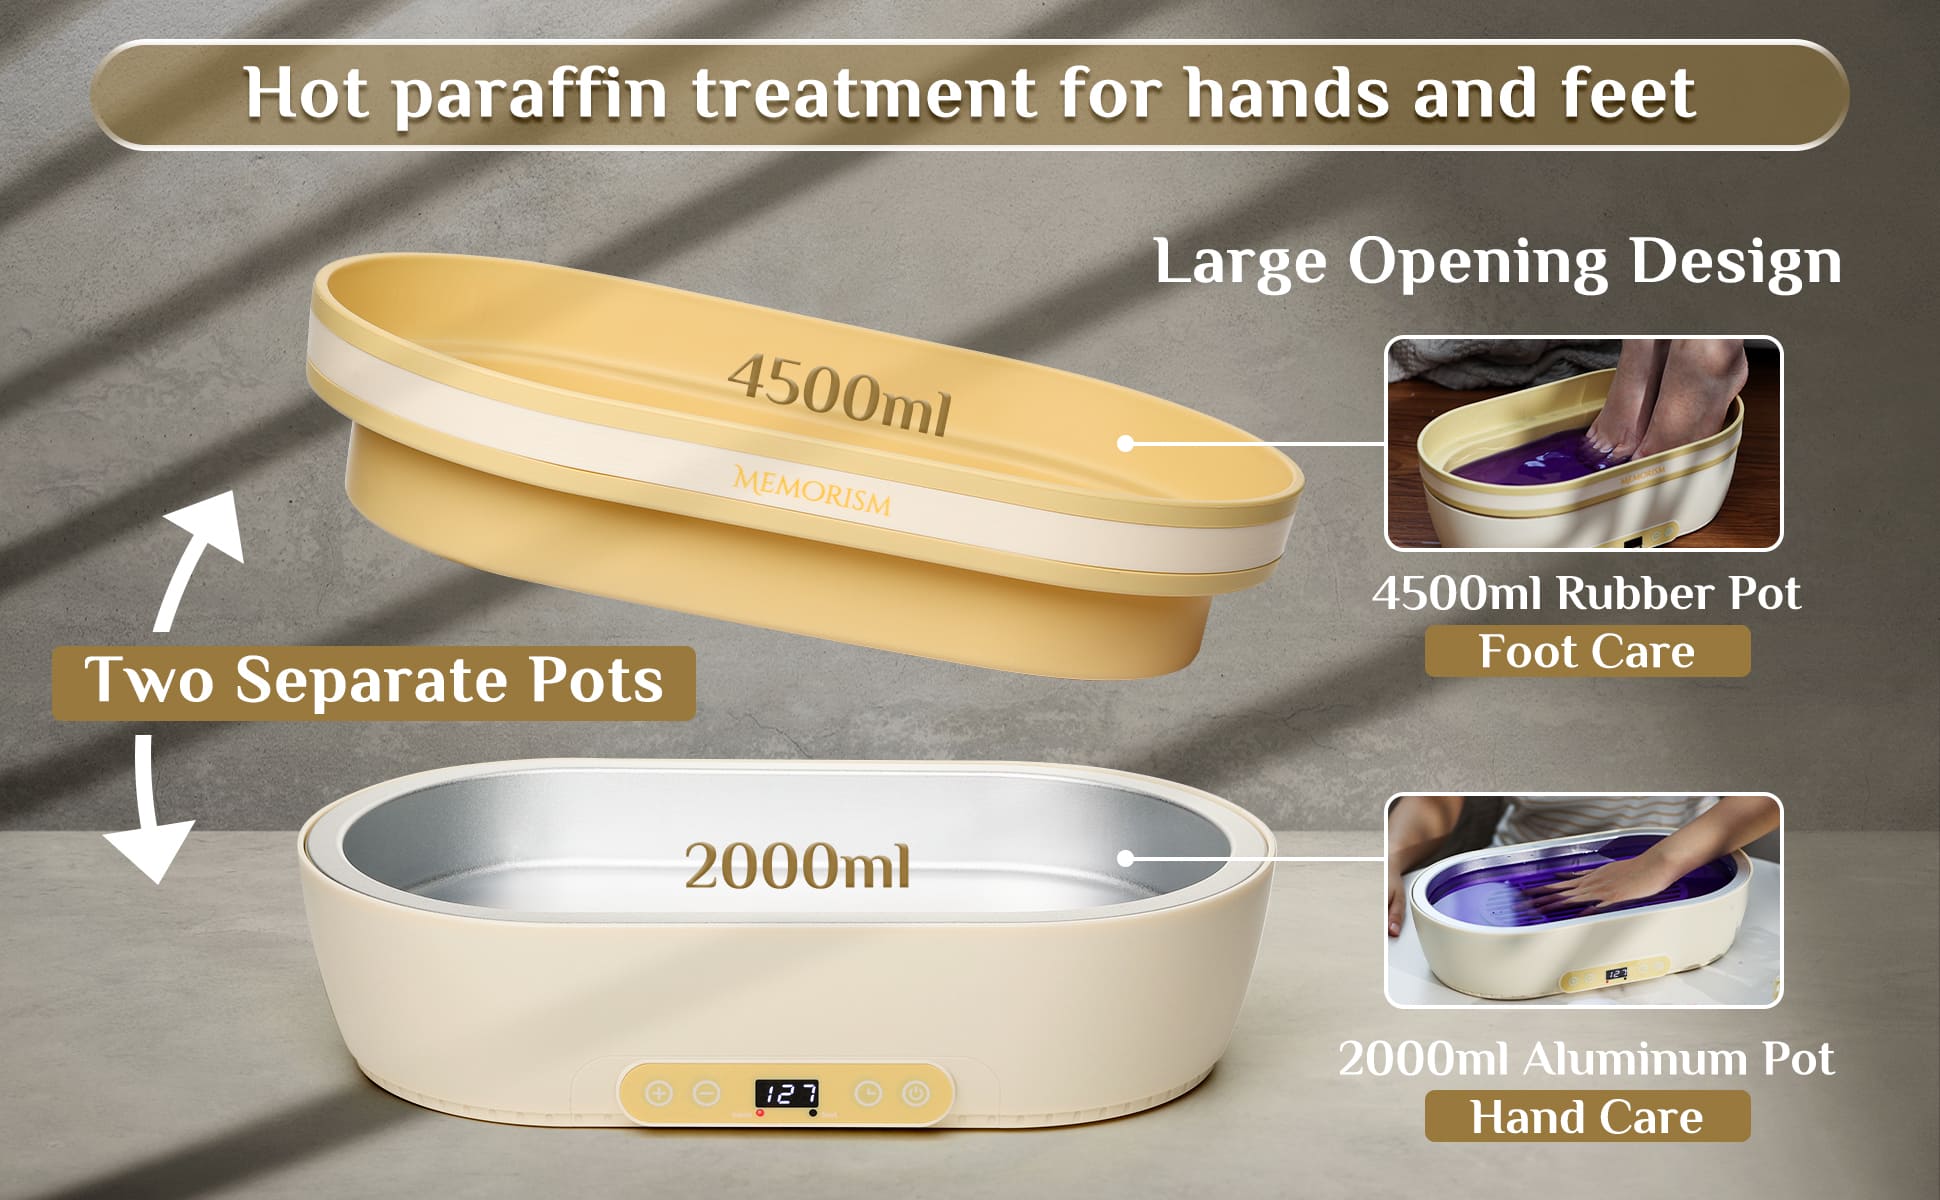 Memorism Paraffin Wax Machine for Hand and Feet, 2000ml Aluminum Pot for  Hands + 4500ml Rubber Pot for Feet